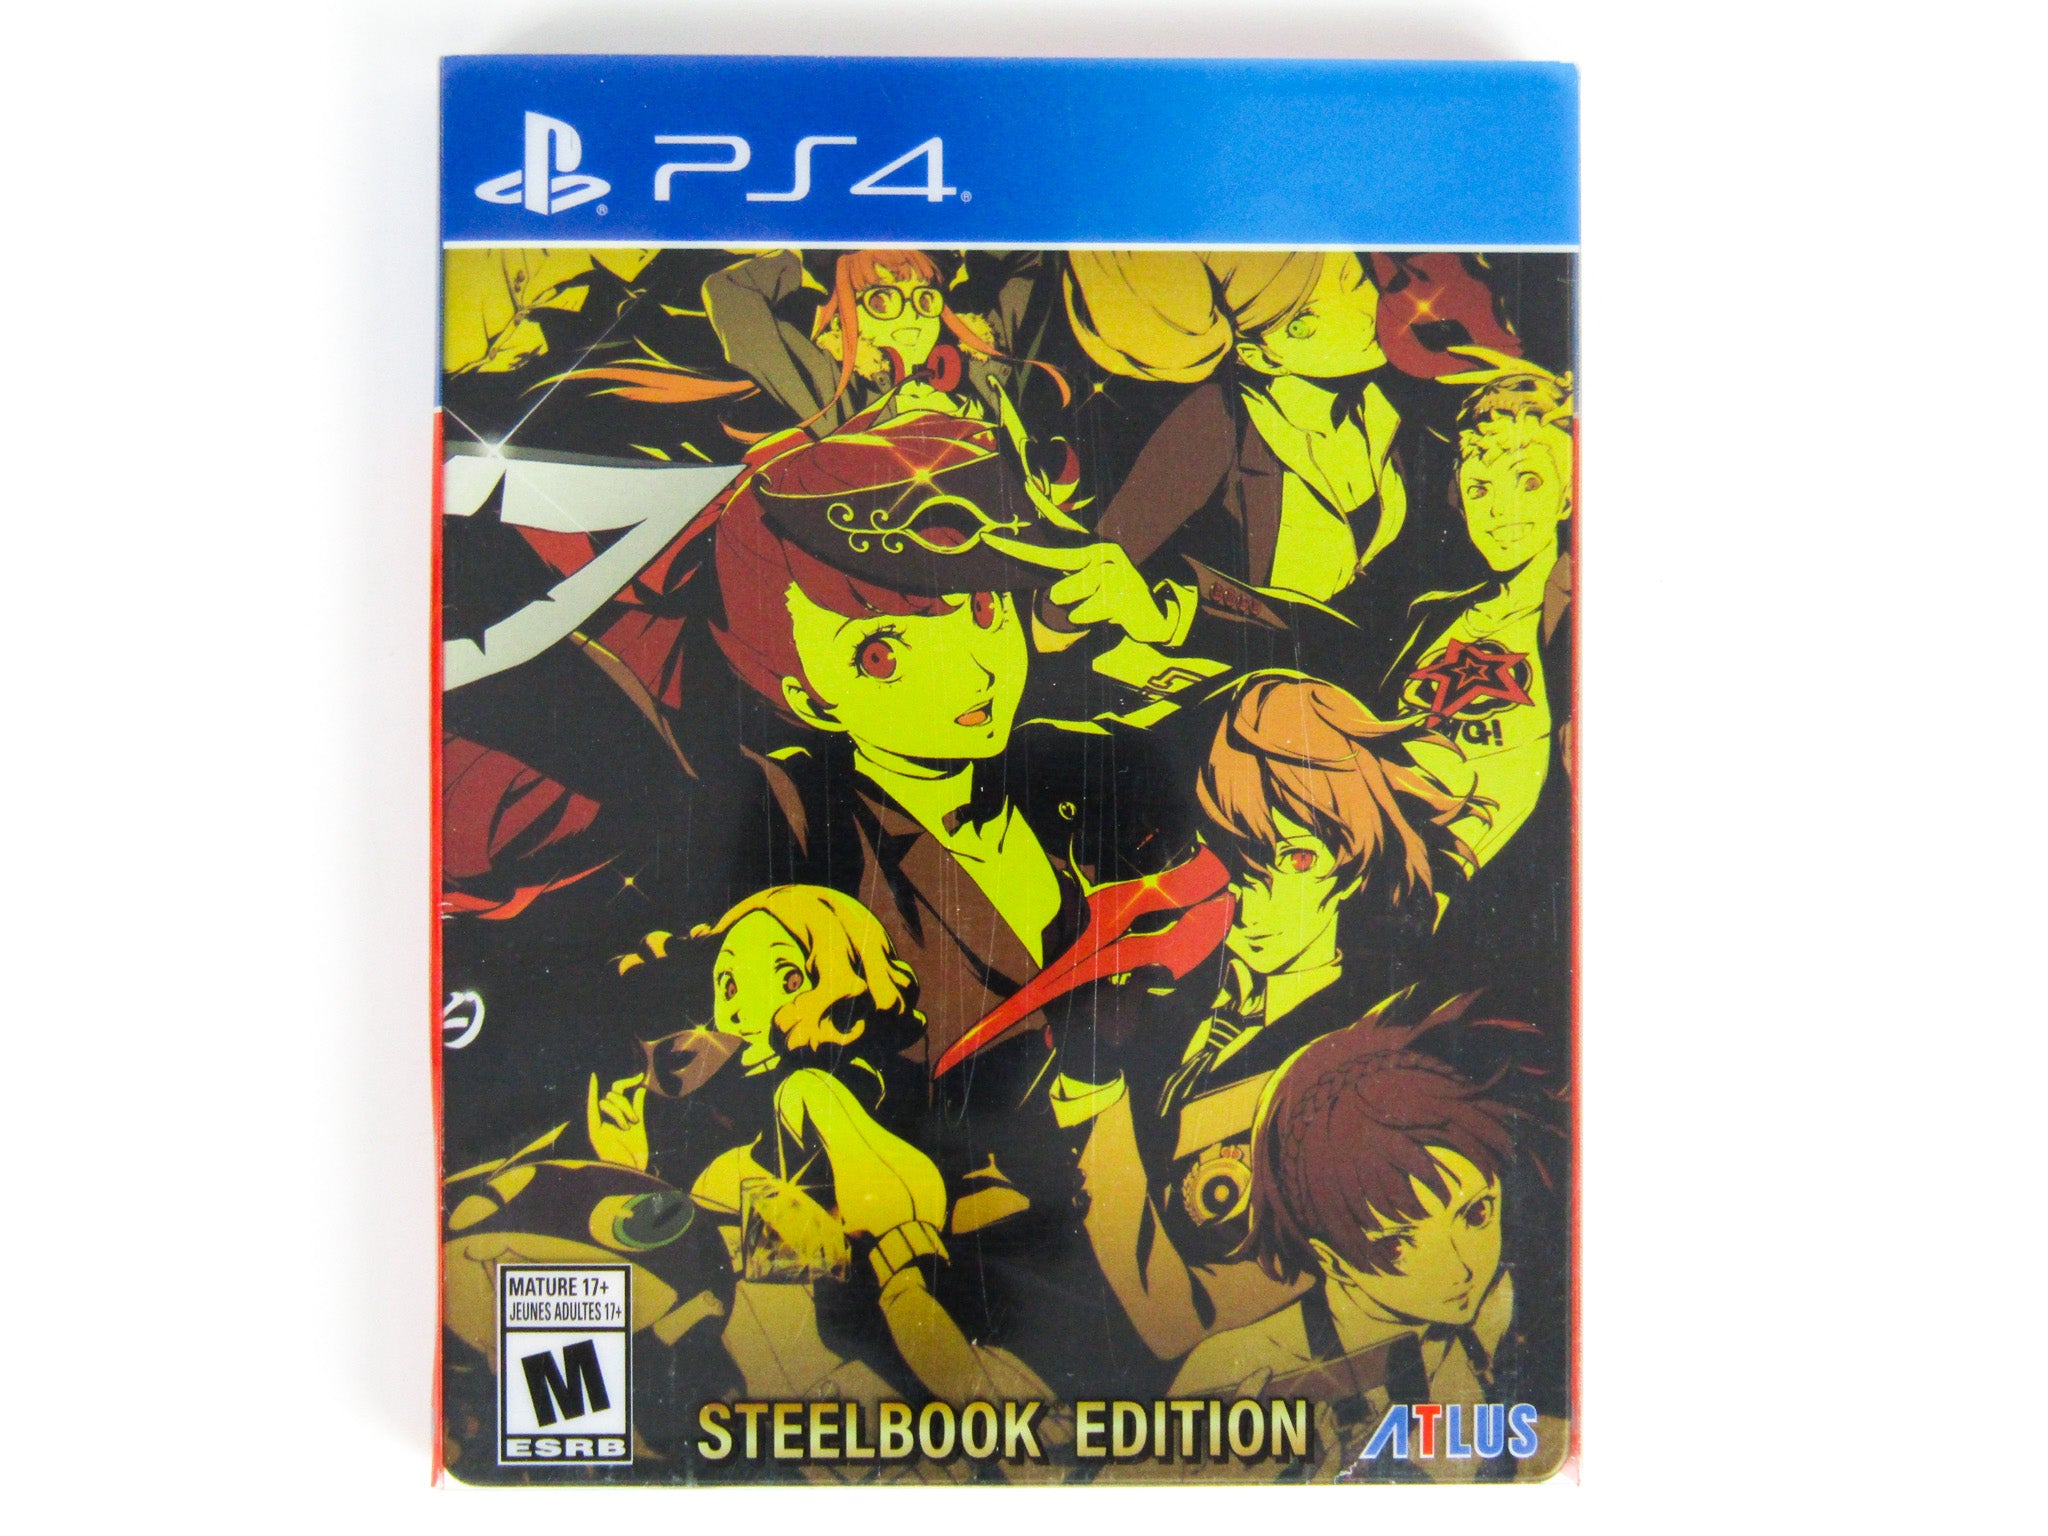 Persona 5 Royal Steelbook Edition, SEGA, PlayStation 4, 730865220274 